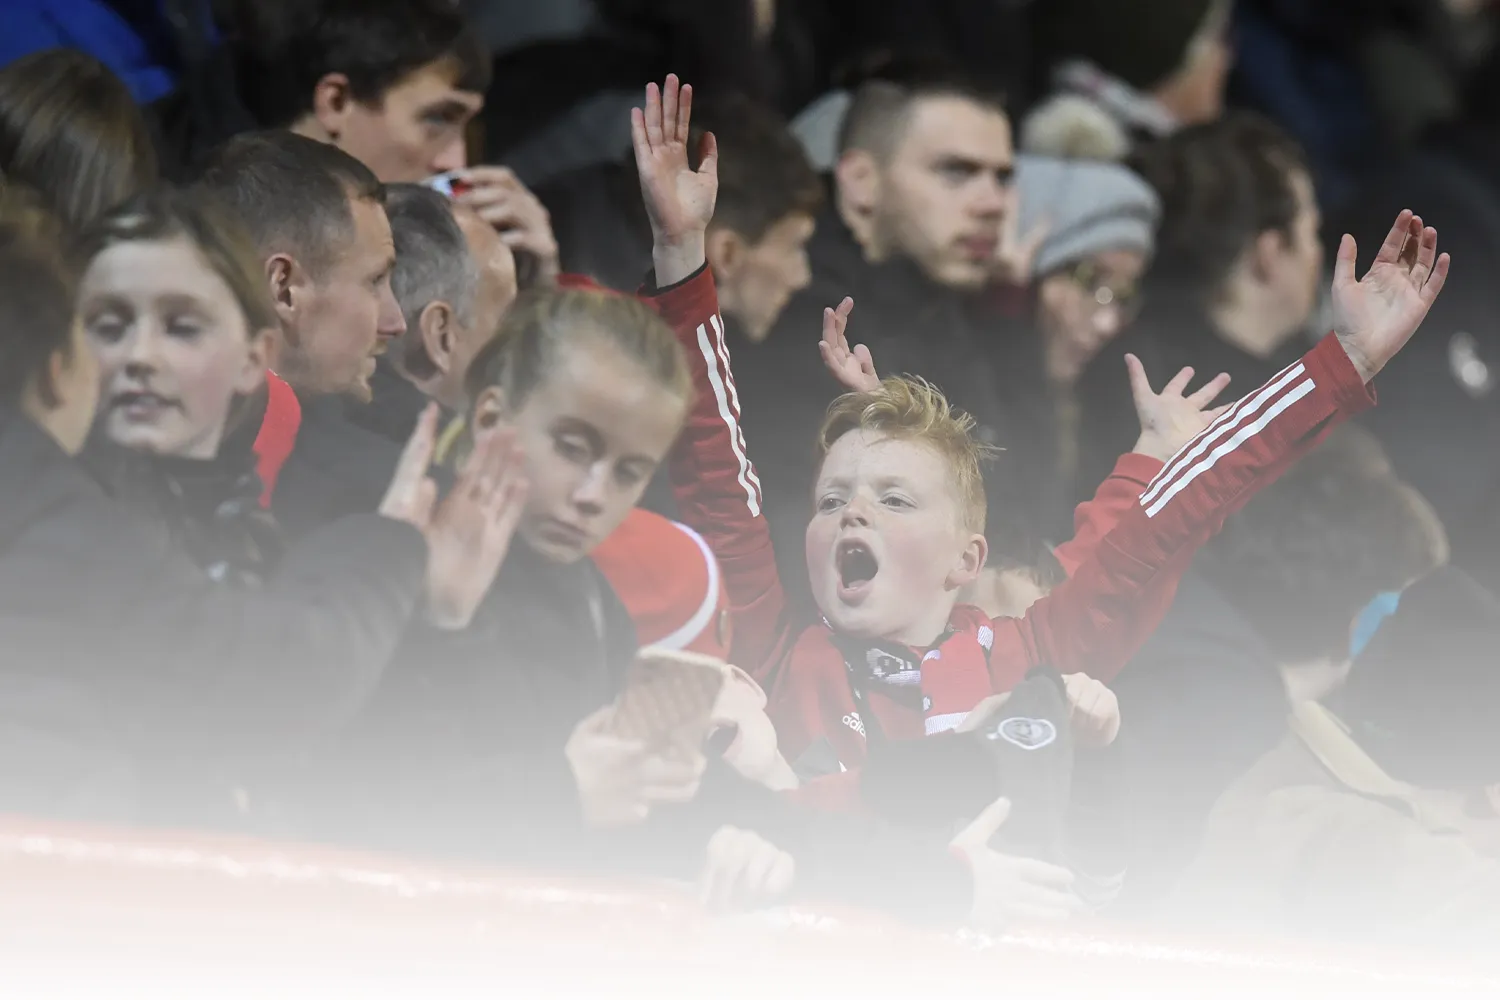 Young fans enjoying an Aberdeen match